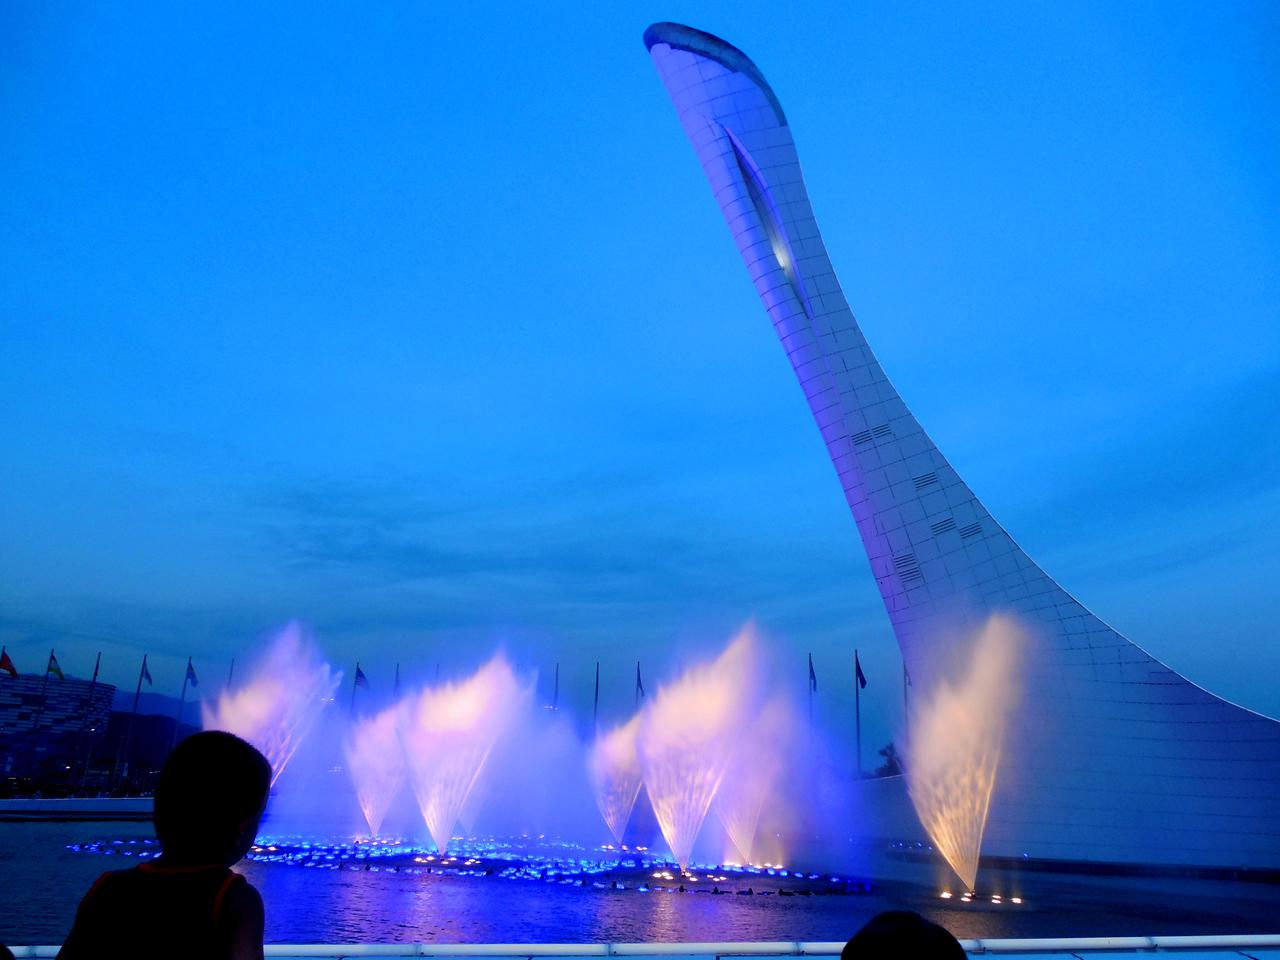 Олимпийский парк. Вечернее шоу музыкальных фонтанов под музыку Чайковского. Супер!!!